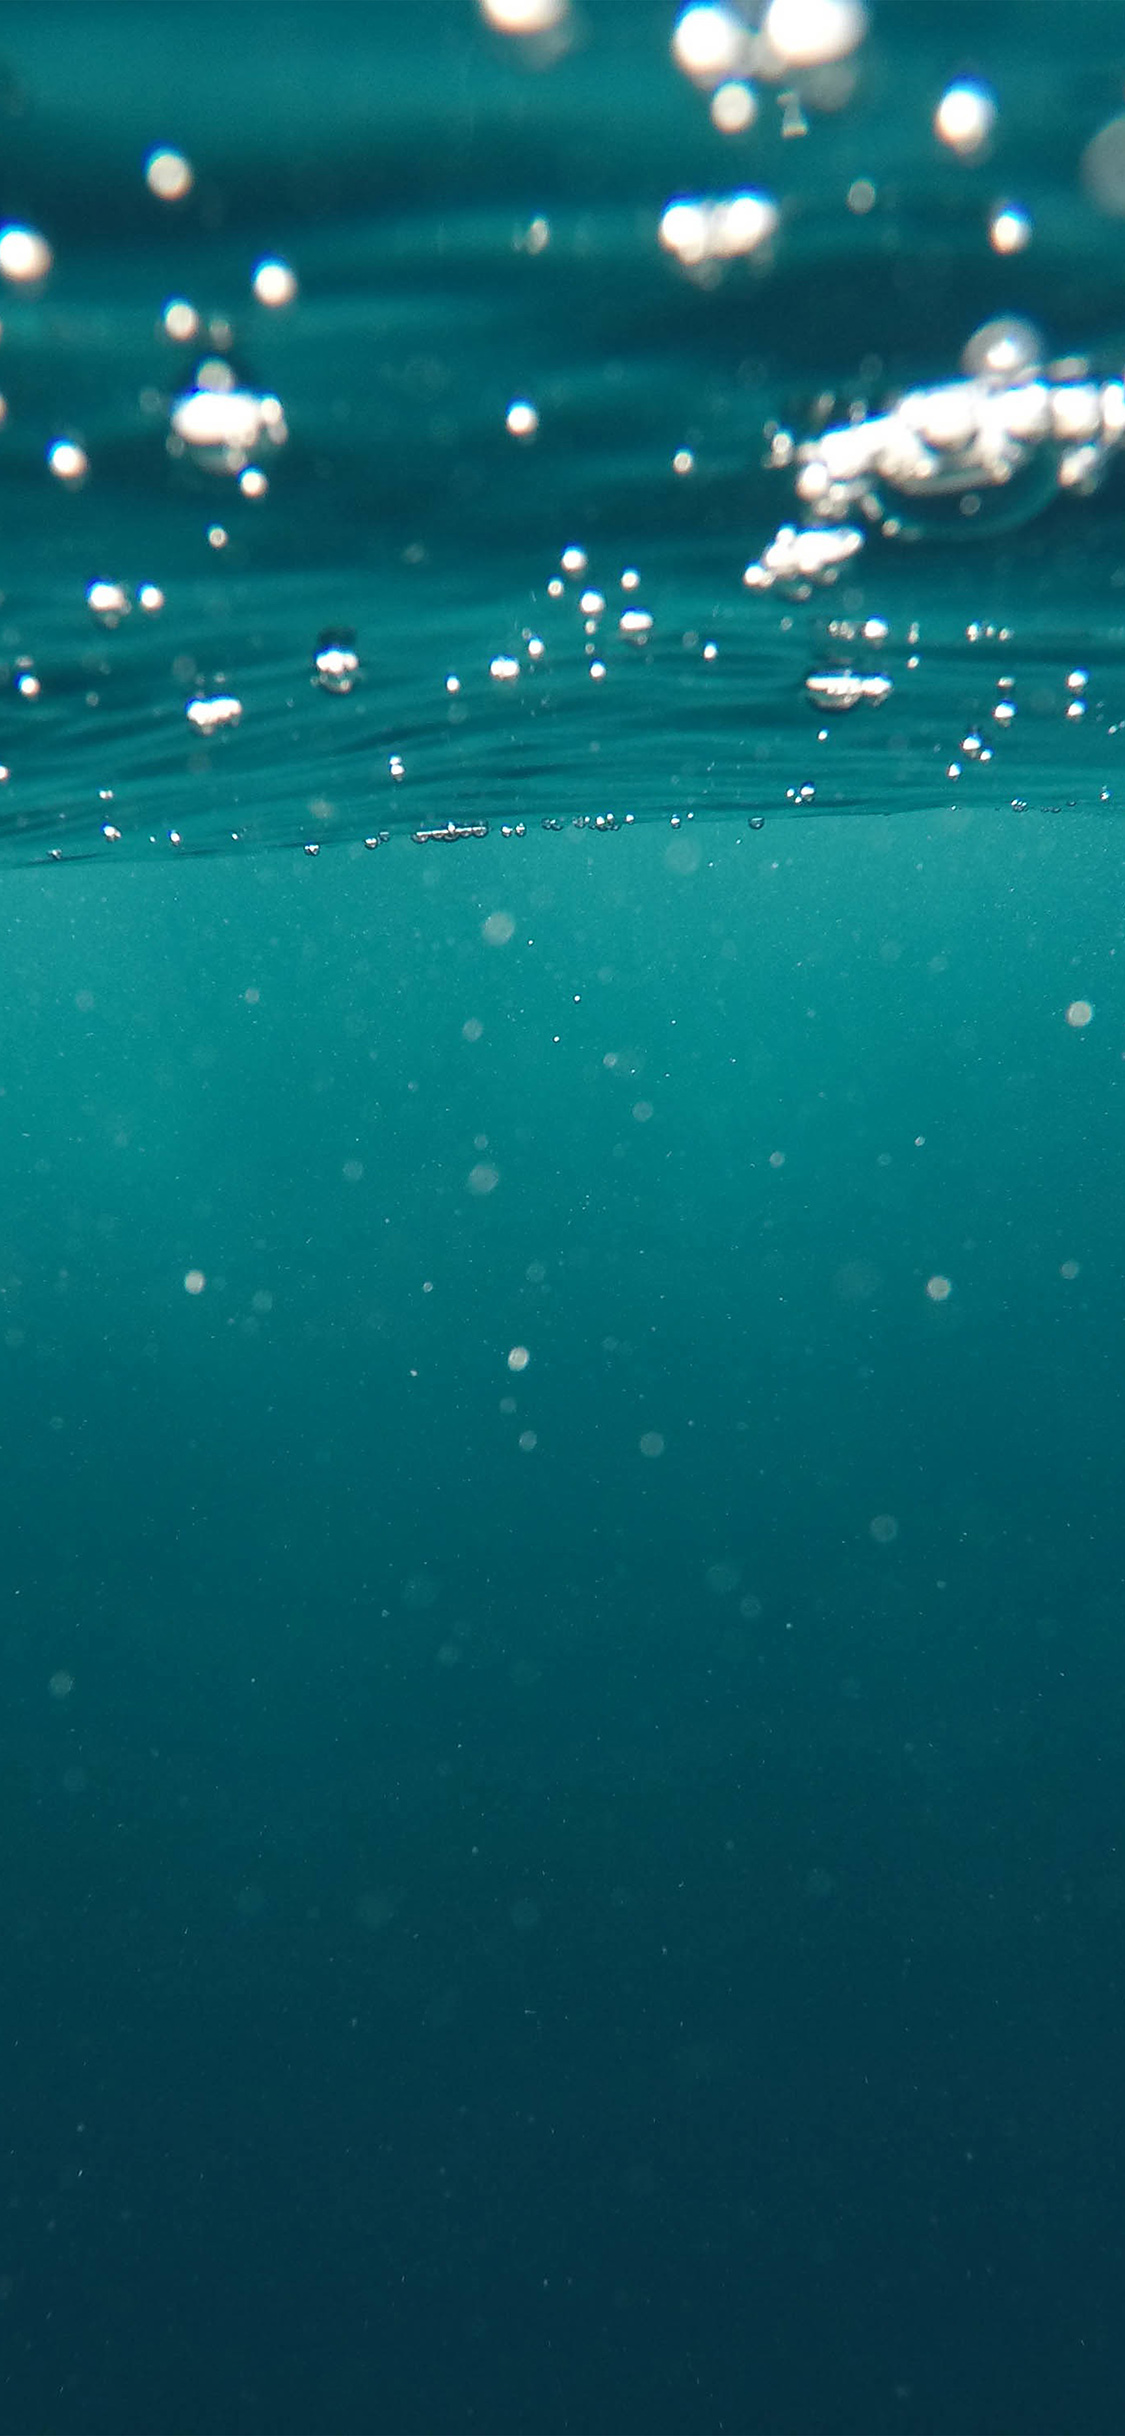 iPhone X wallpaper. bubble underwater swim blue pattern